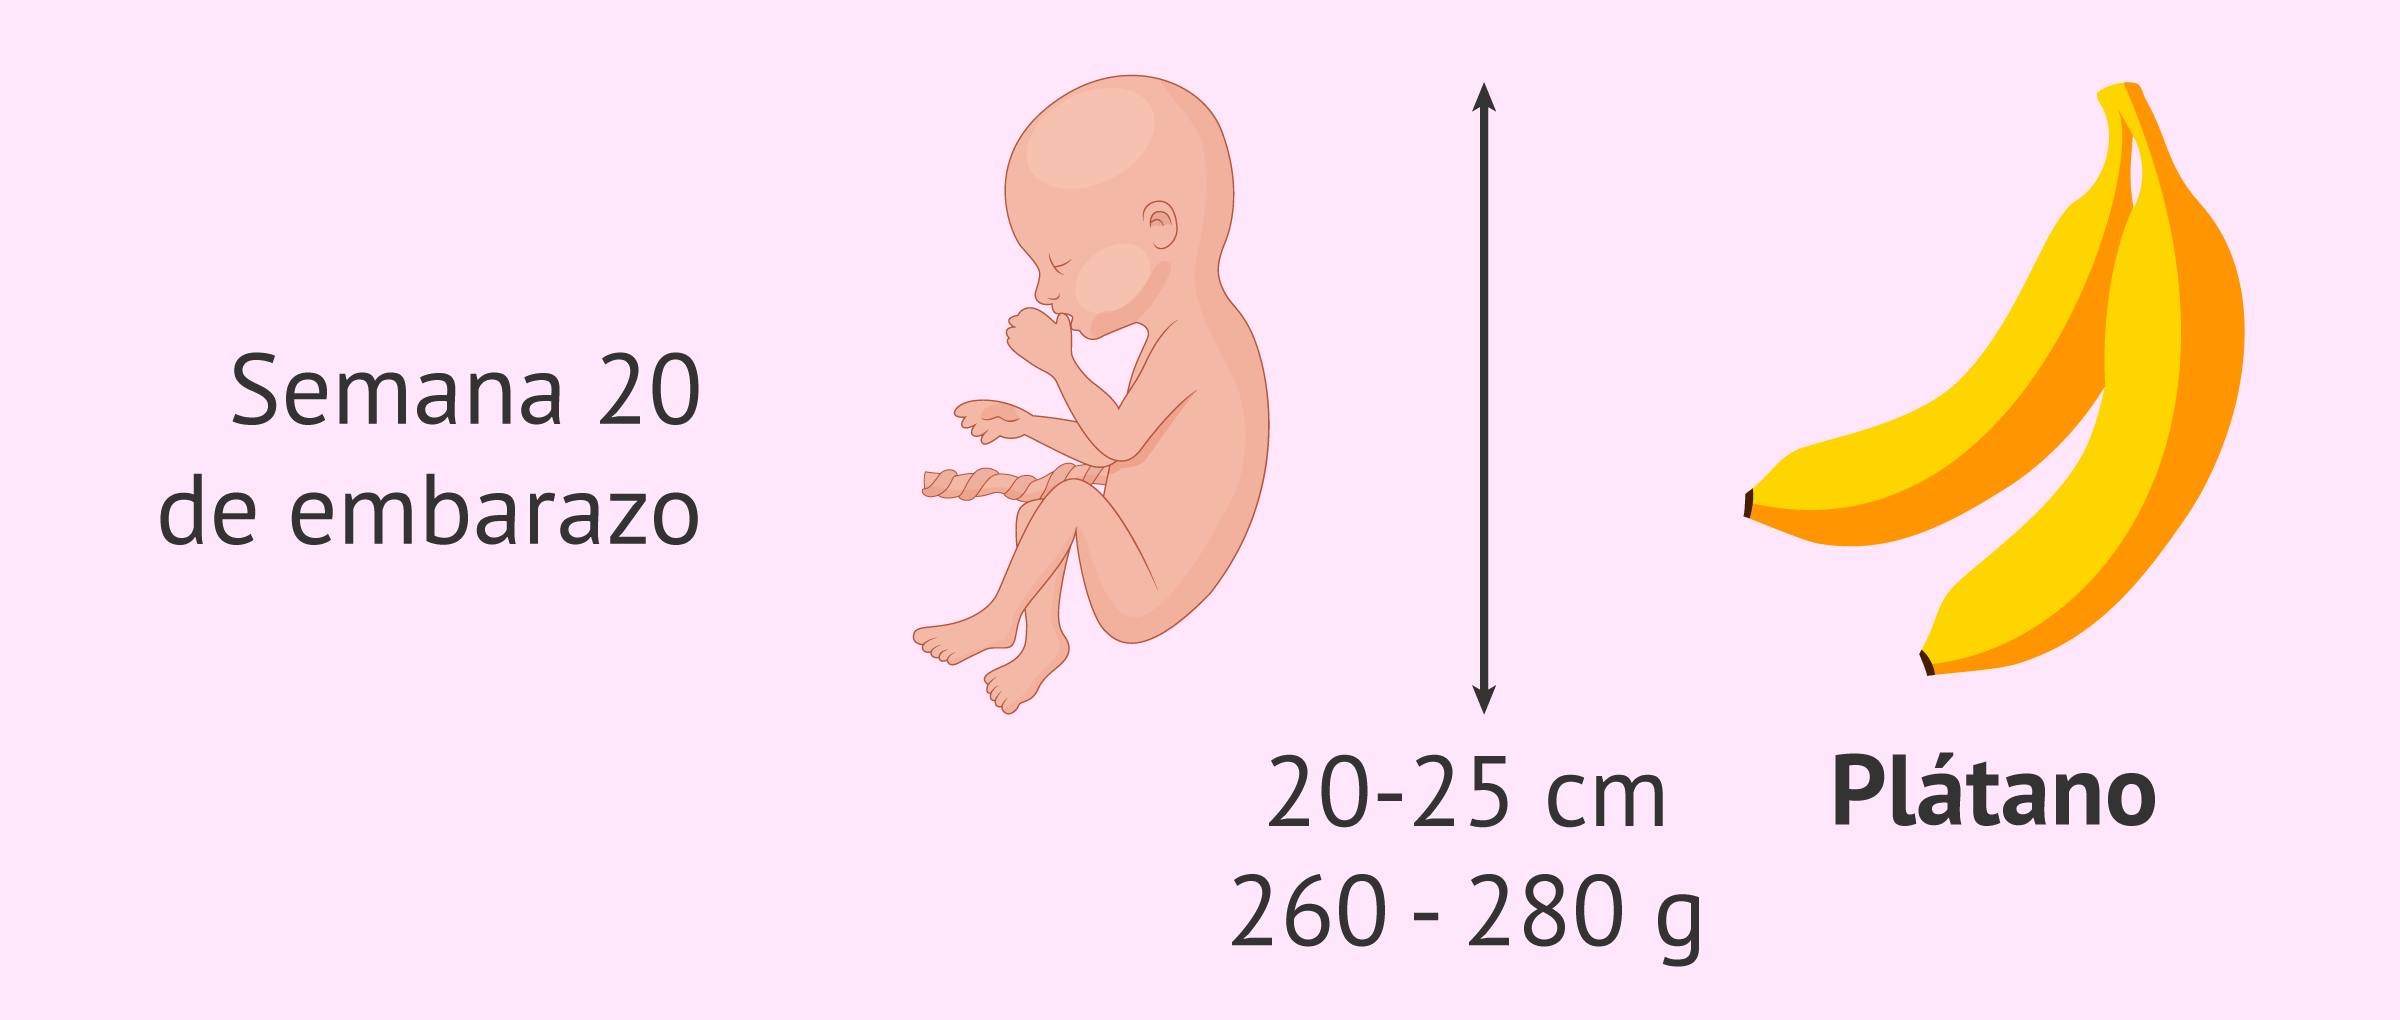 Tamaño del feto en la semana 20